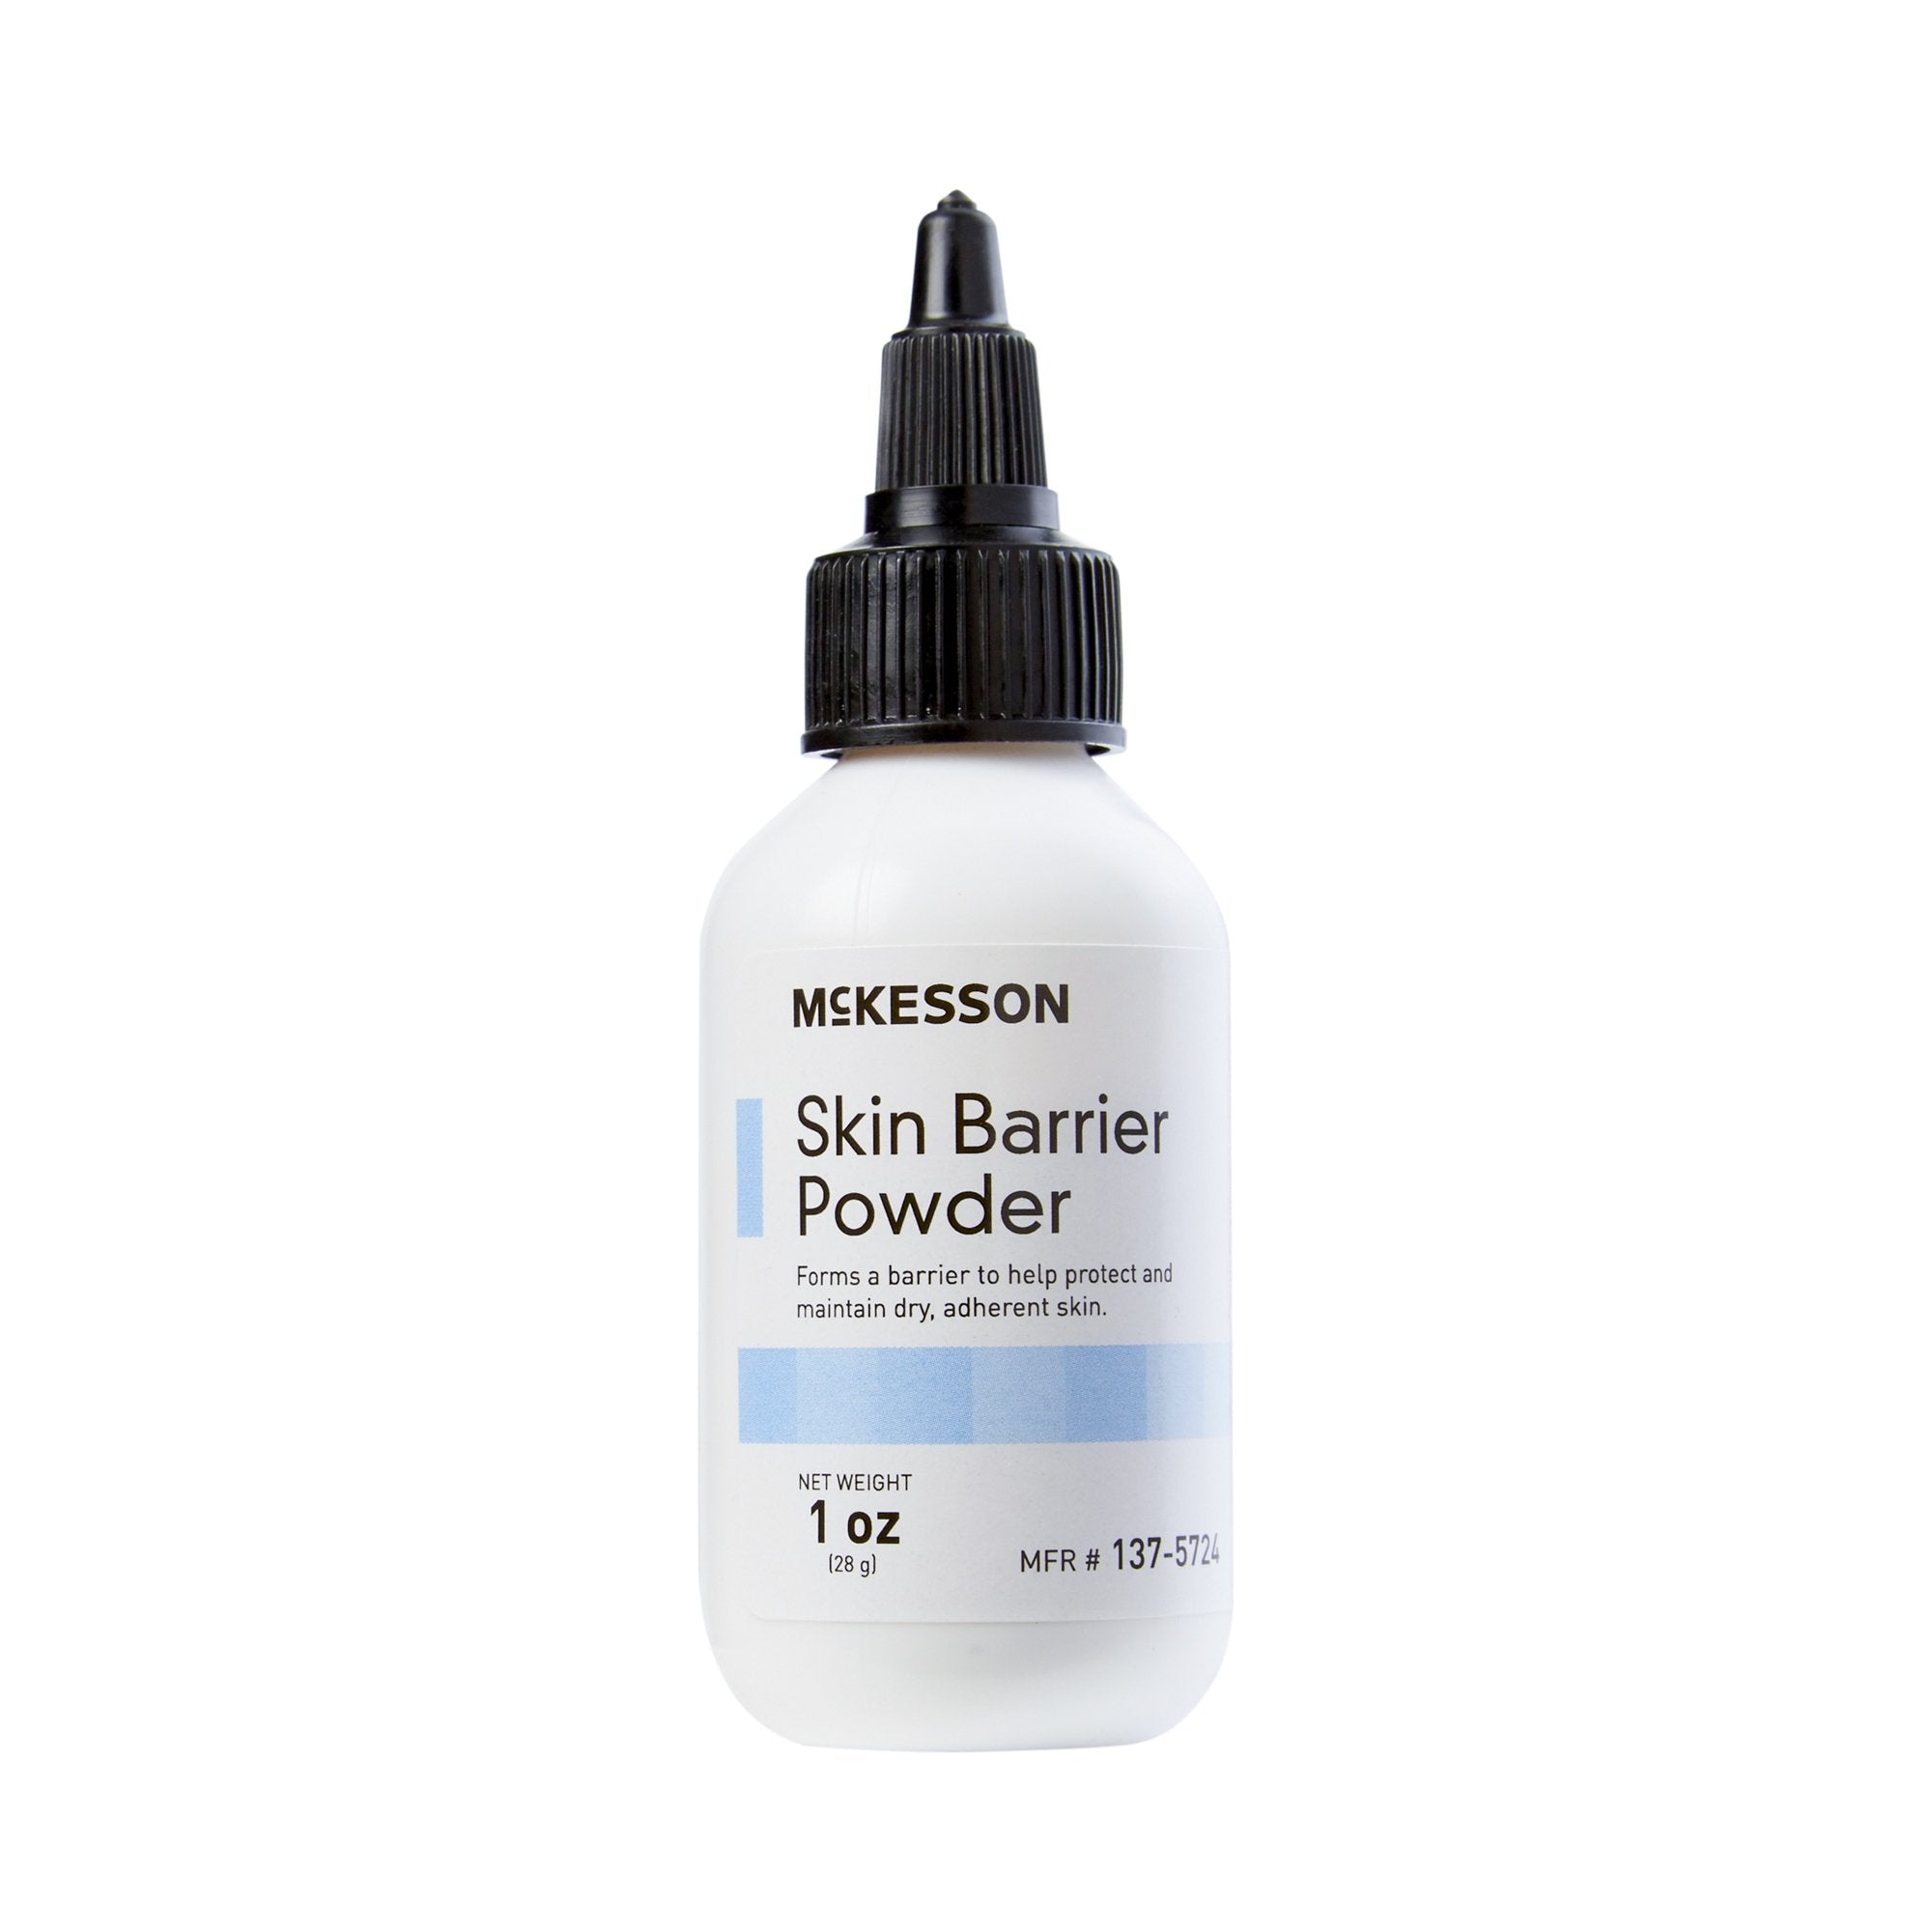 Ostomy Barrier Powder McKesson 1 oz. Puff Bottle, Protective Skin Barrier